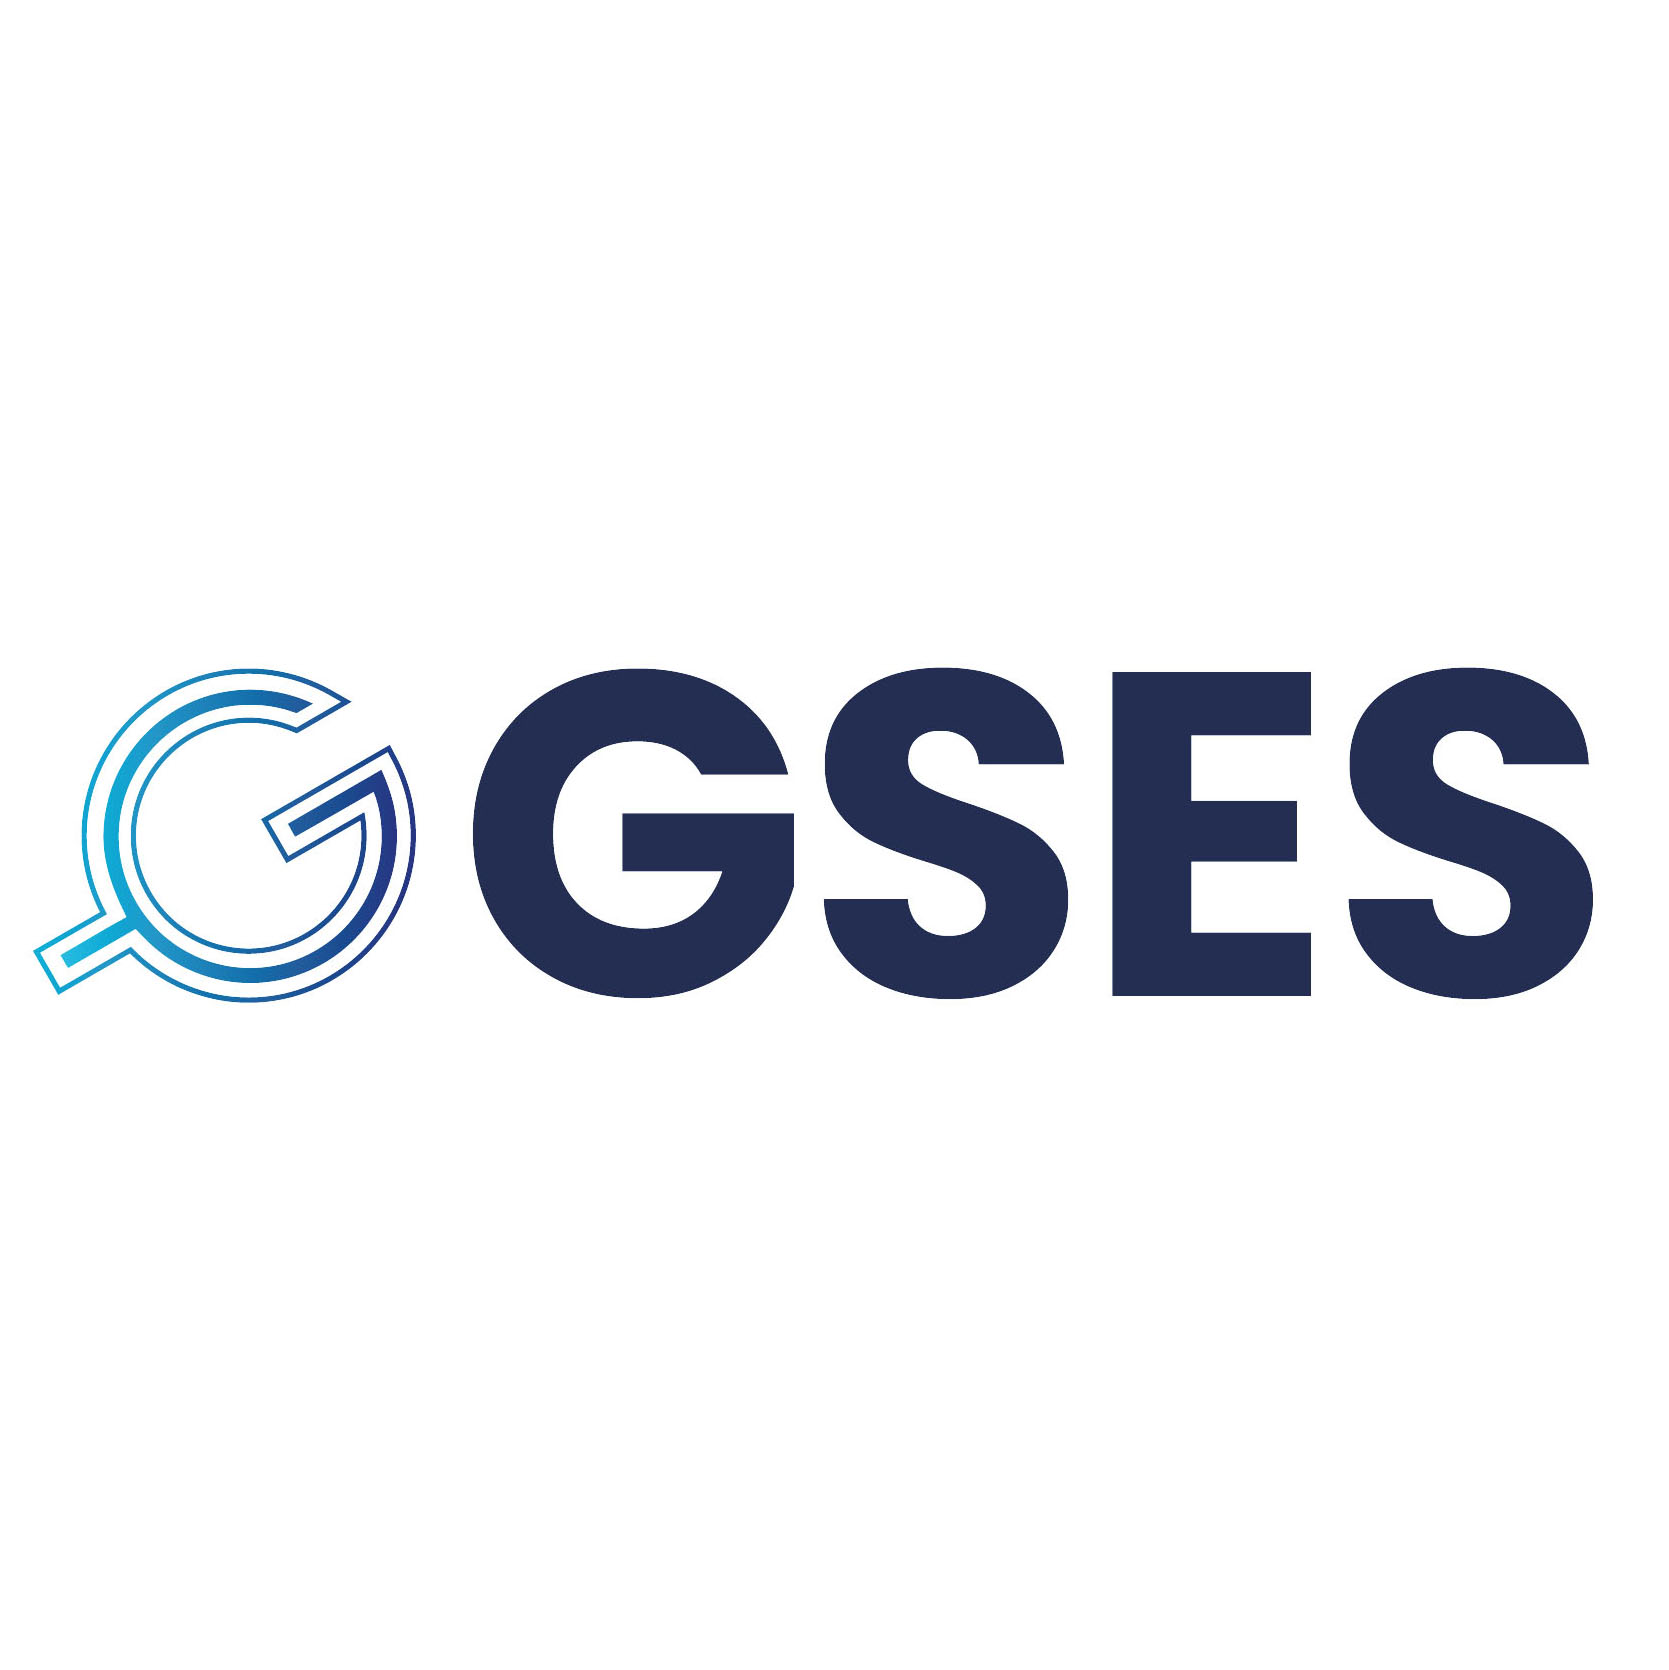 GSES Management B.V. (GSES)
___
Partner